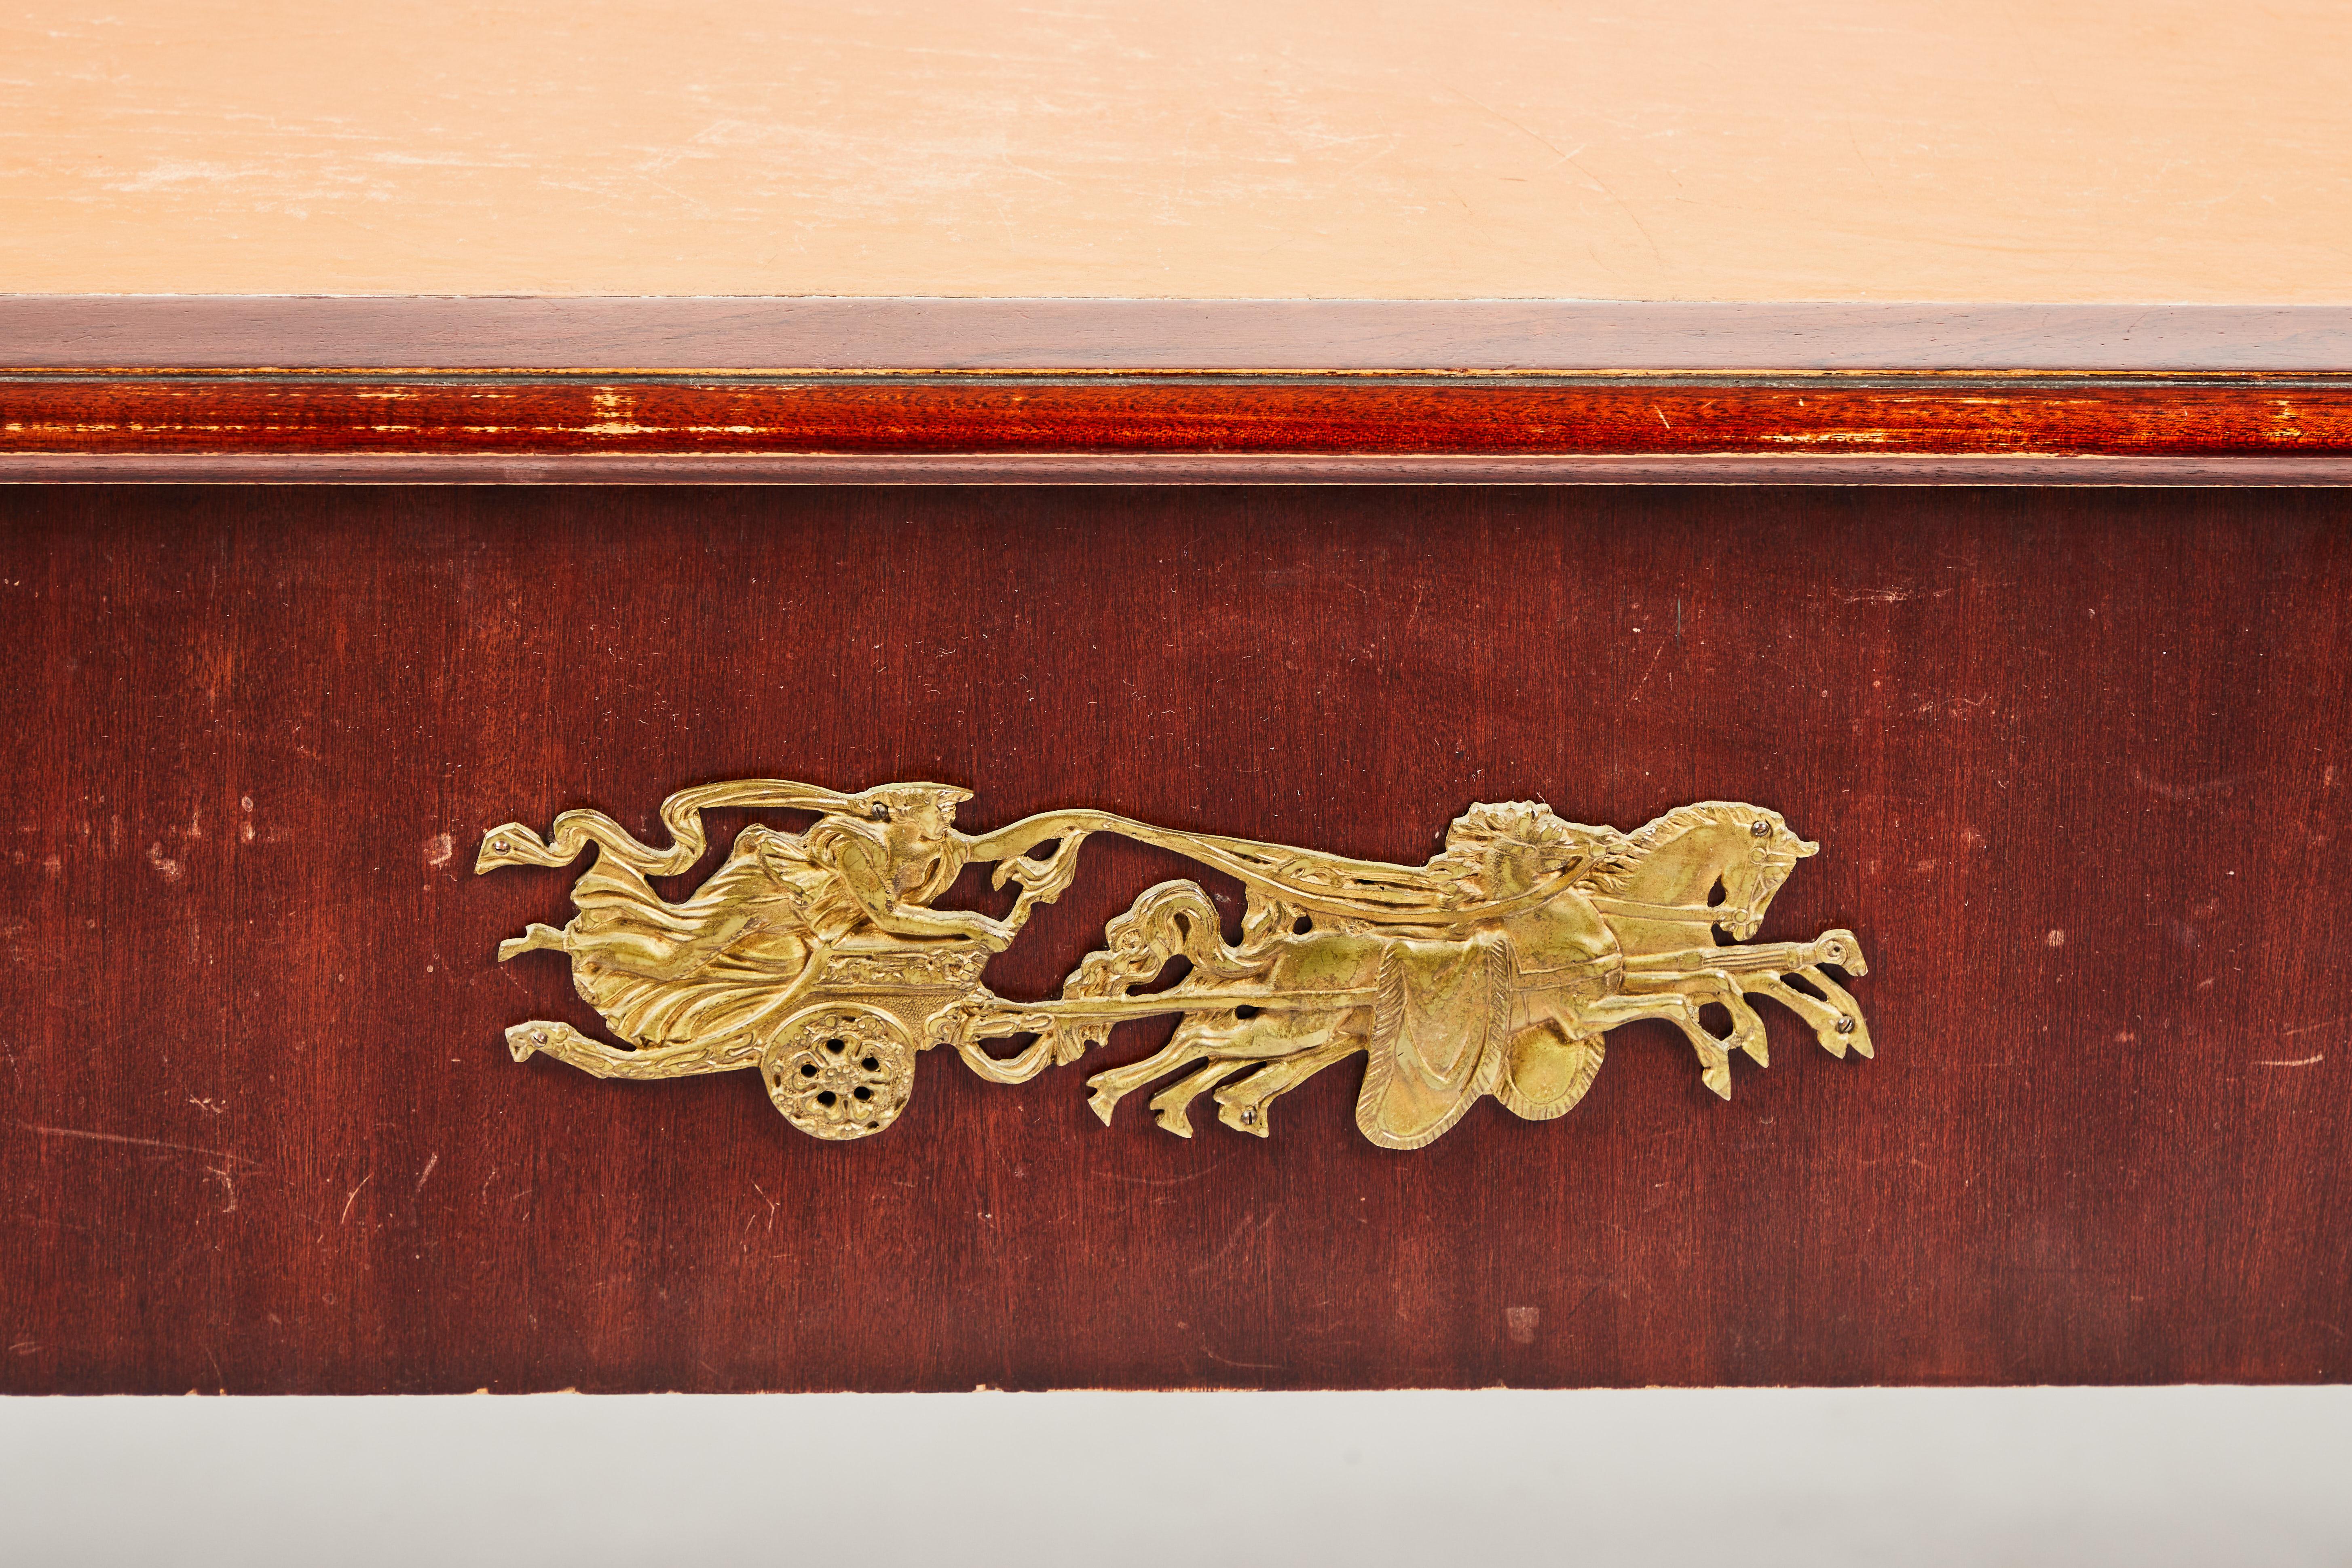 Mahagonikonstruktion mit rechteckiger Lederschreibfläche mit vergoldeten Messingmedaillongriffen. Die Rückseite ist mit einer vergoldeten Metallplakette für einen Streitwagen und ein Pferd versehen. Die Platte ruht auf gedrechselten Bockbeinen und